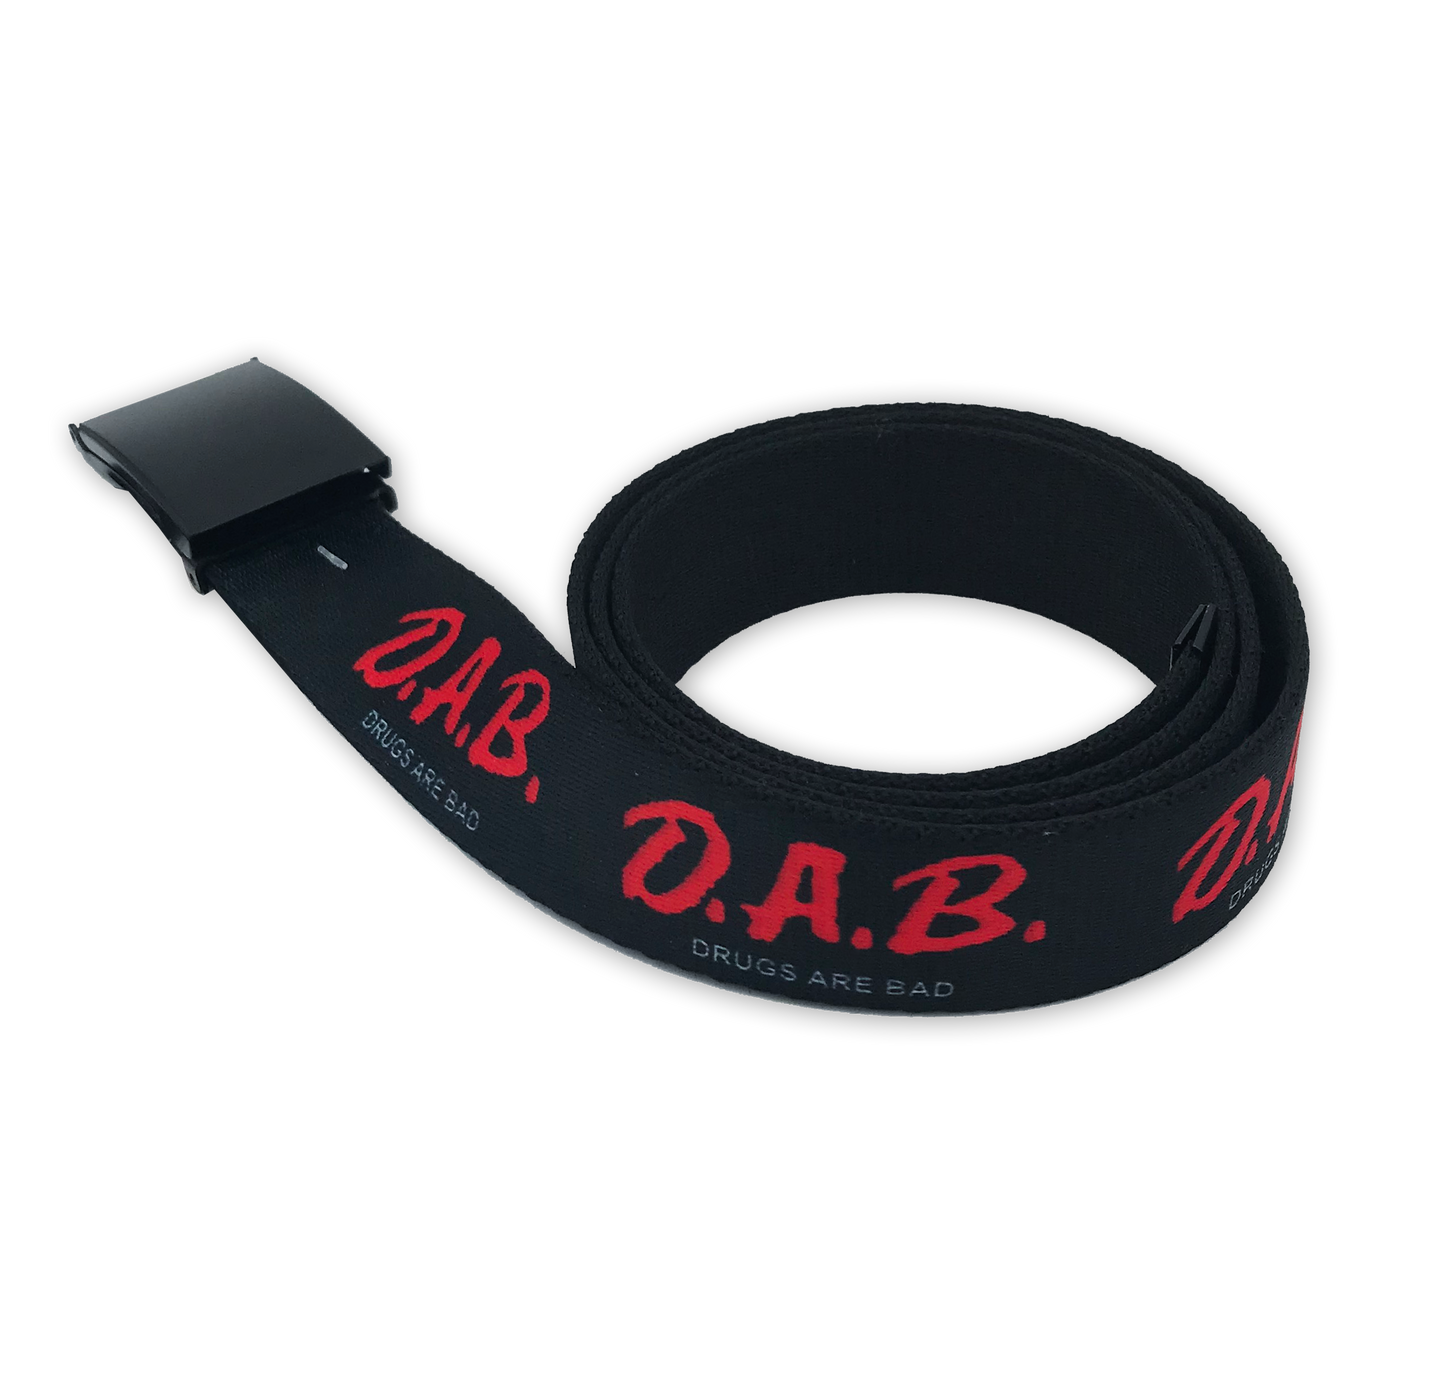 D.A.B. Web Belt